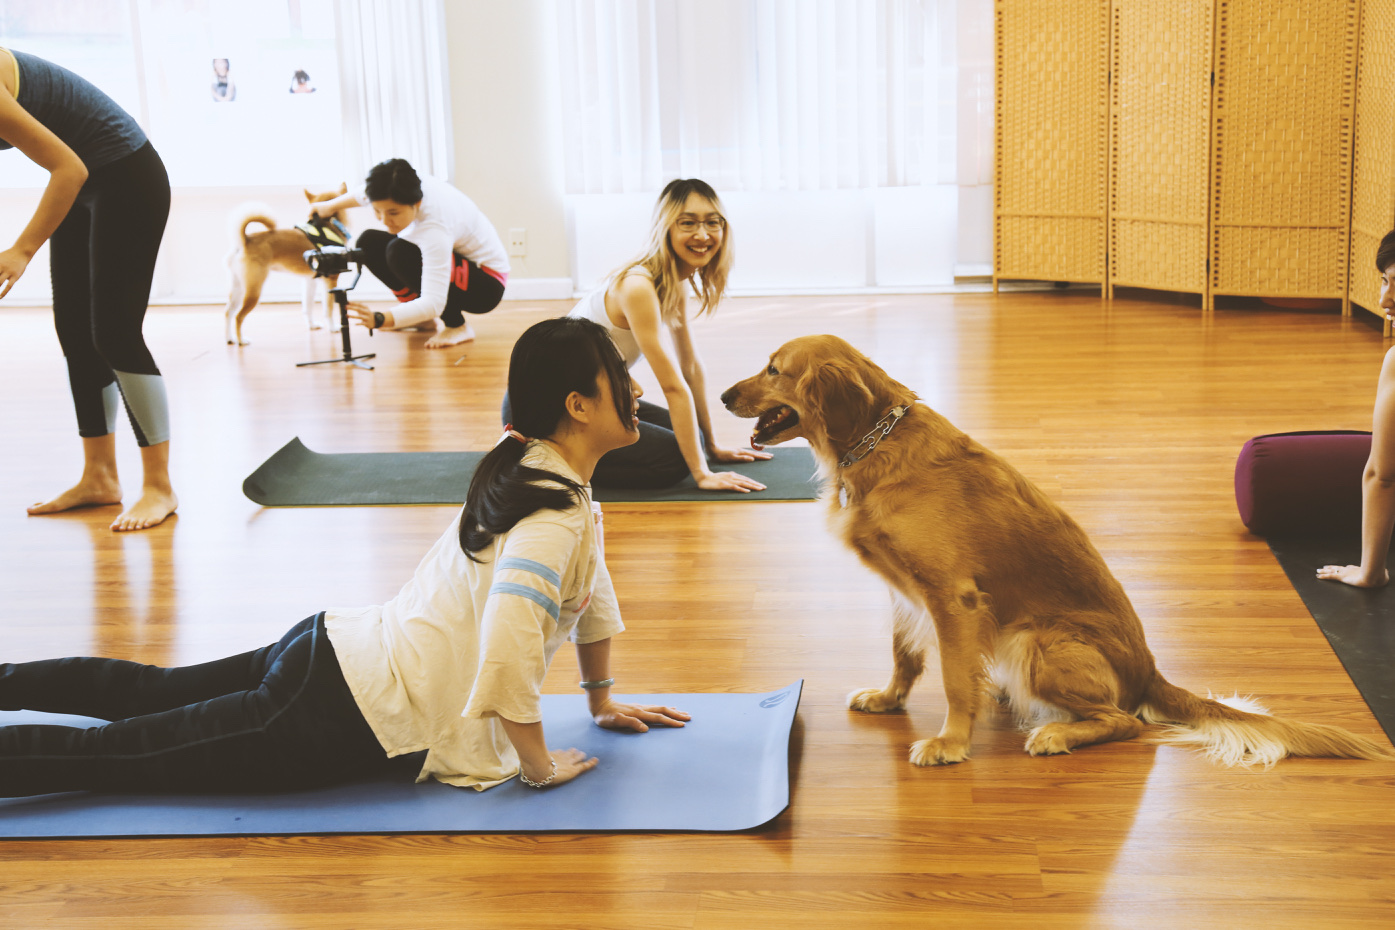 Jiaren Yoga Studio & Wellness Center In Santa Clara CA